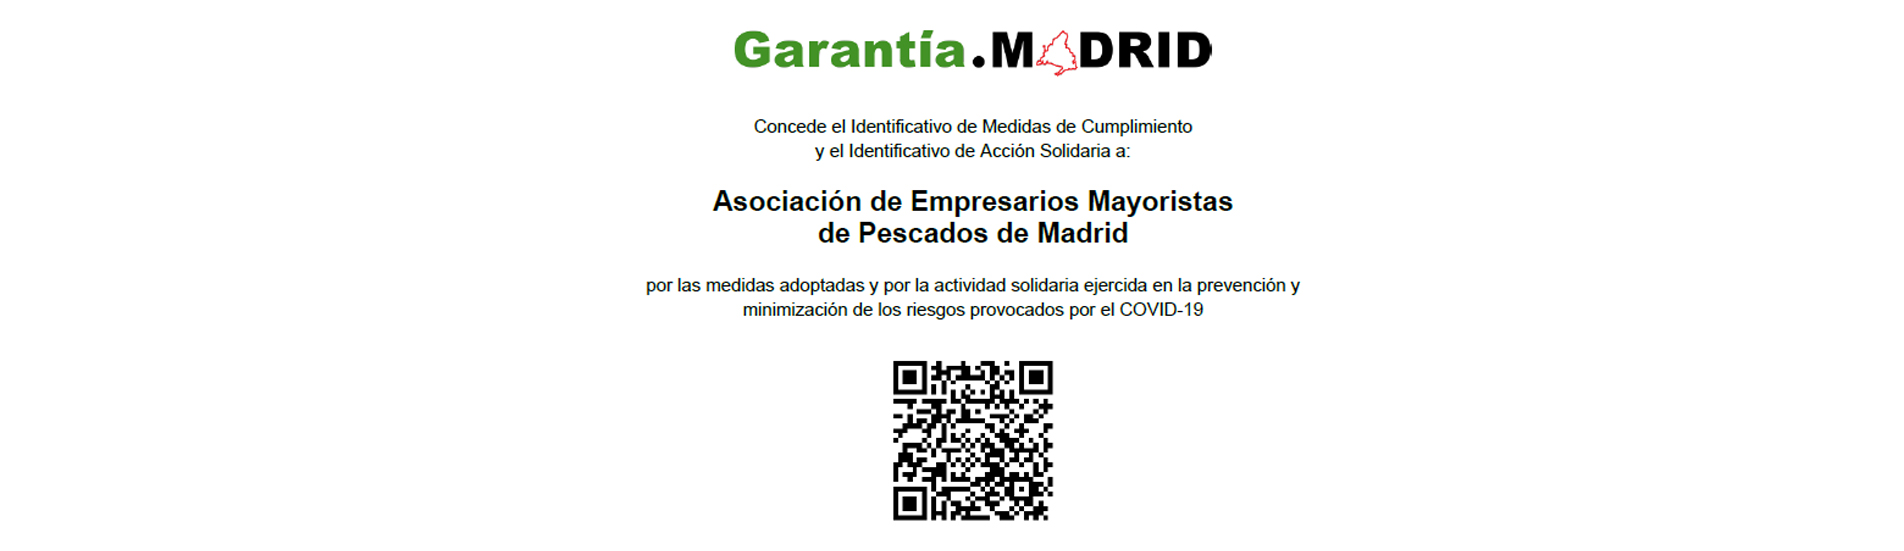 La Asociación de Empresarios Mayoristas de Pescados de Madrid recibe el Identificativo de Garantía Madrid en reconocimiento por su acción solidaria y gestión durante la pandemia del COVID-19